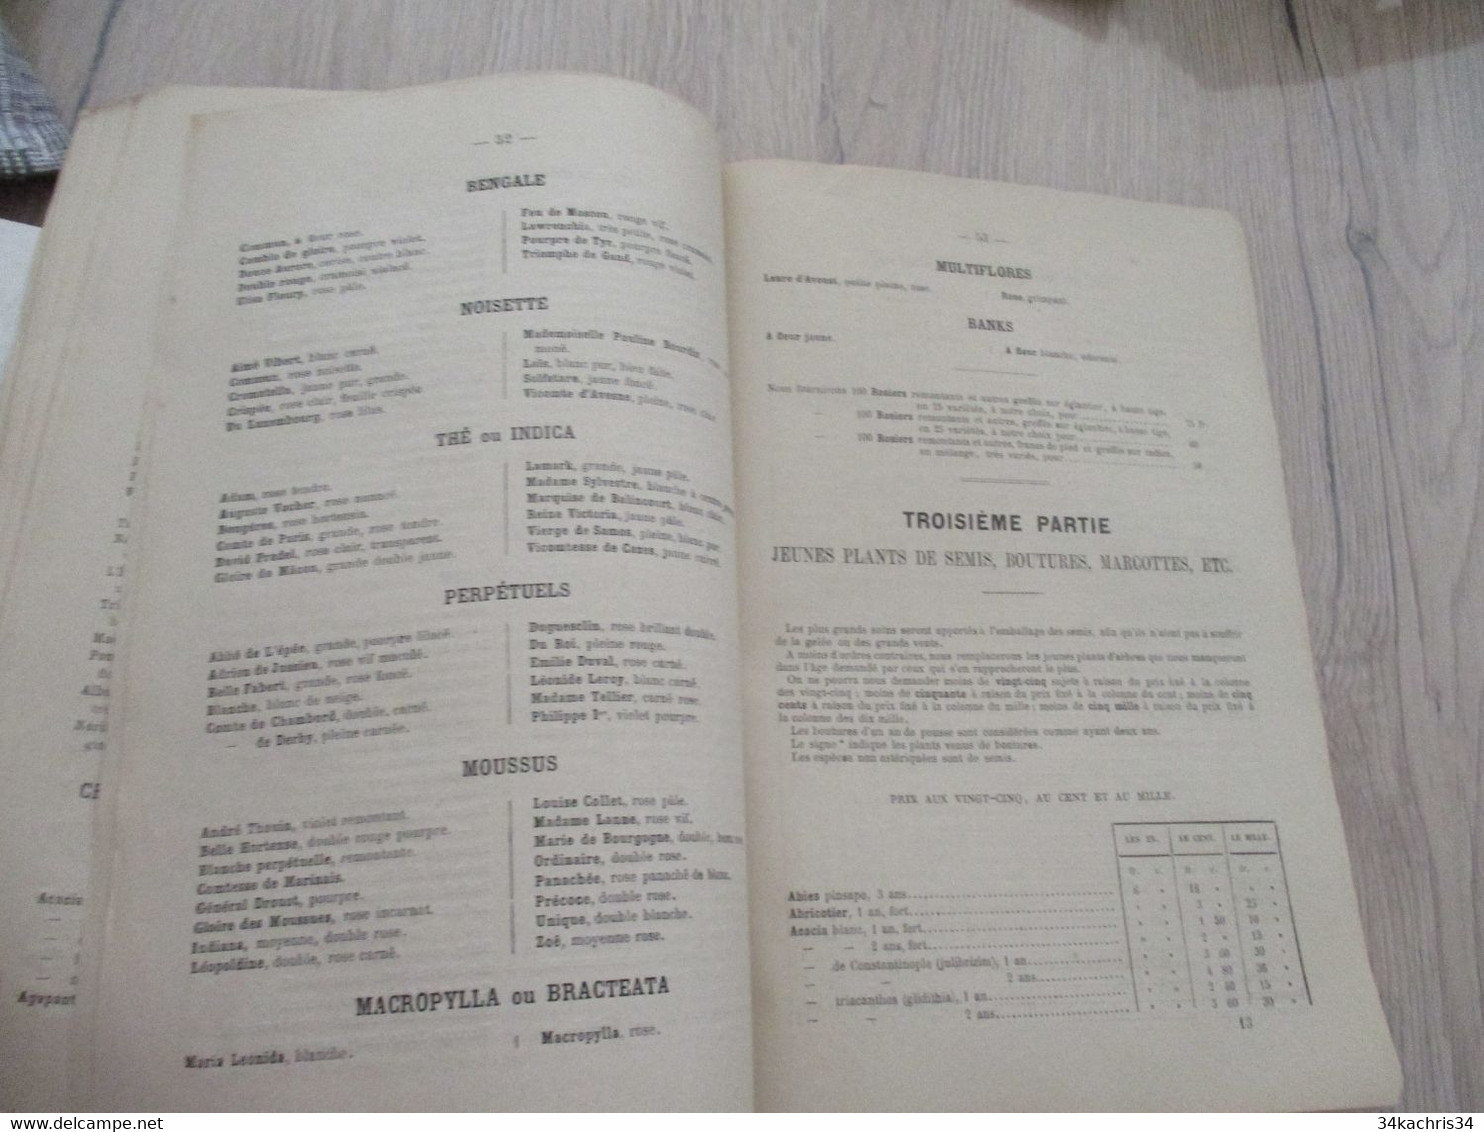 Catalogue Pub Publicité 1867 Horticulture Combin Bagnols sur Cèze 68p